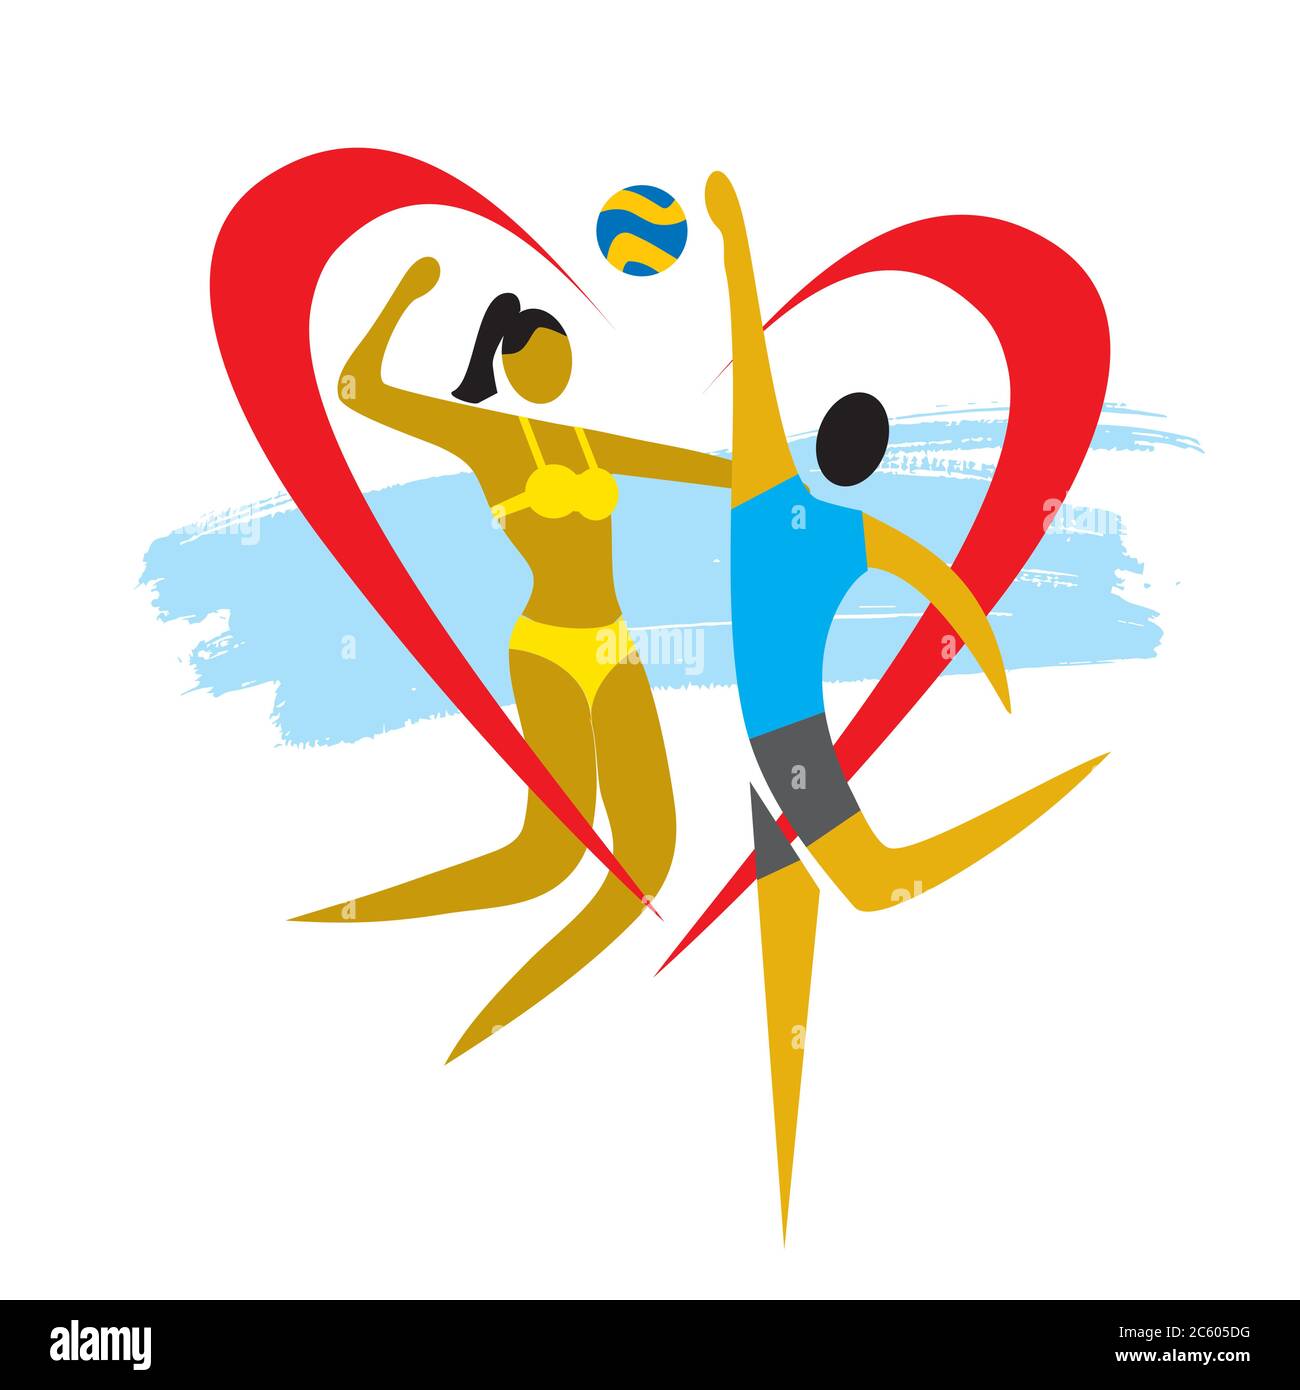 Paar mit Herz Symbol Volleyball spielen. Bunte Illustration von heterosexuellen Paar, Volleyball-Spieler. Beziehungskonzept. Vektor verfügbar. Stock Vektor